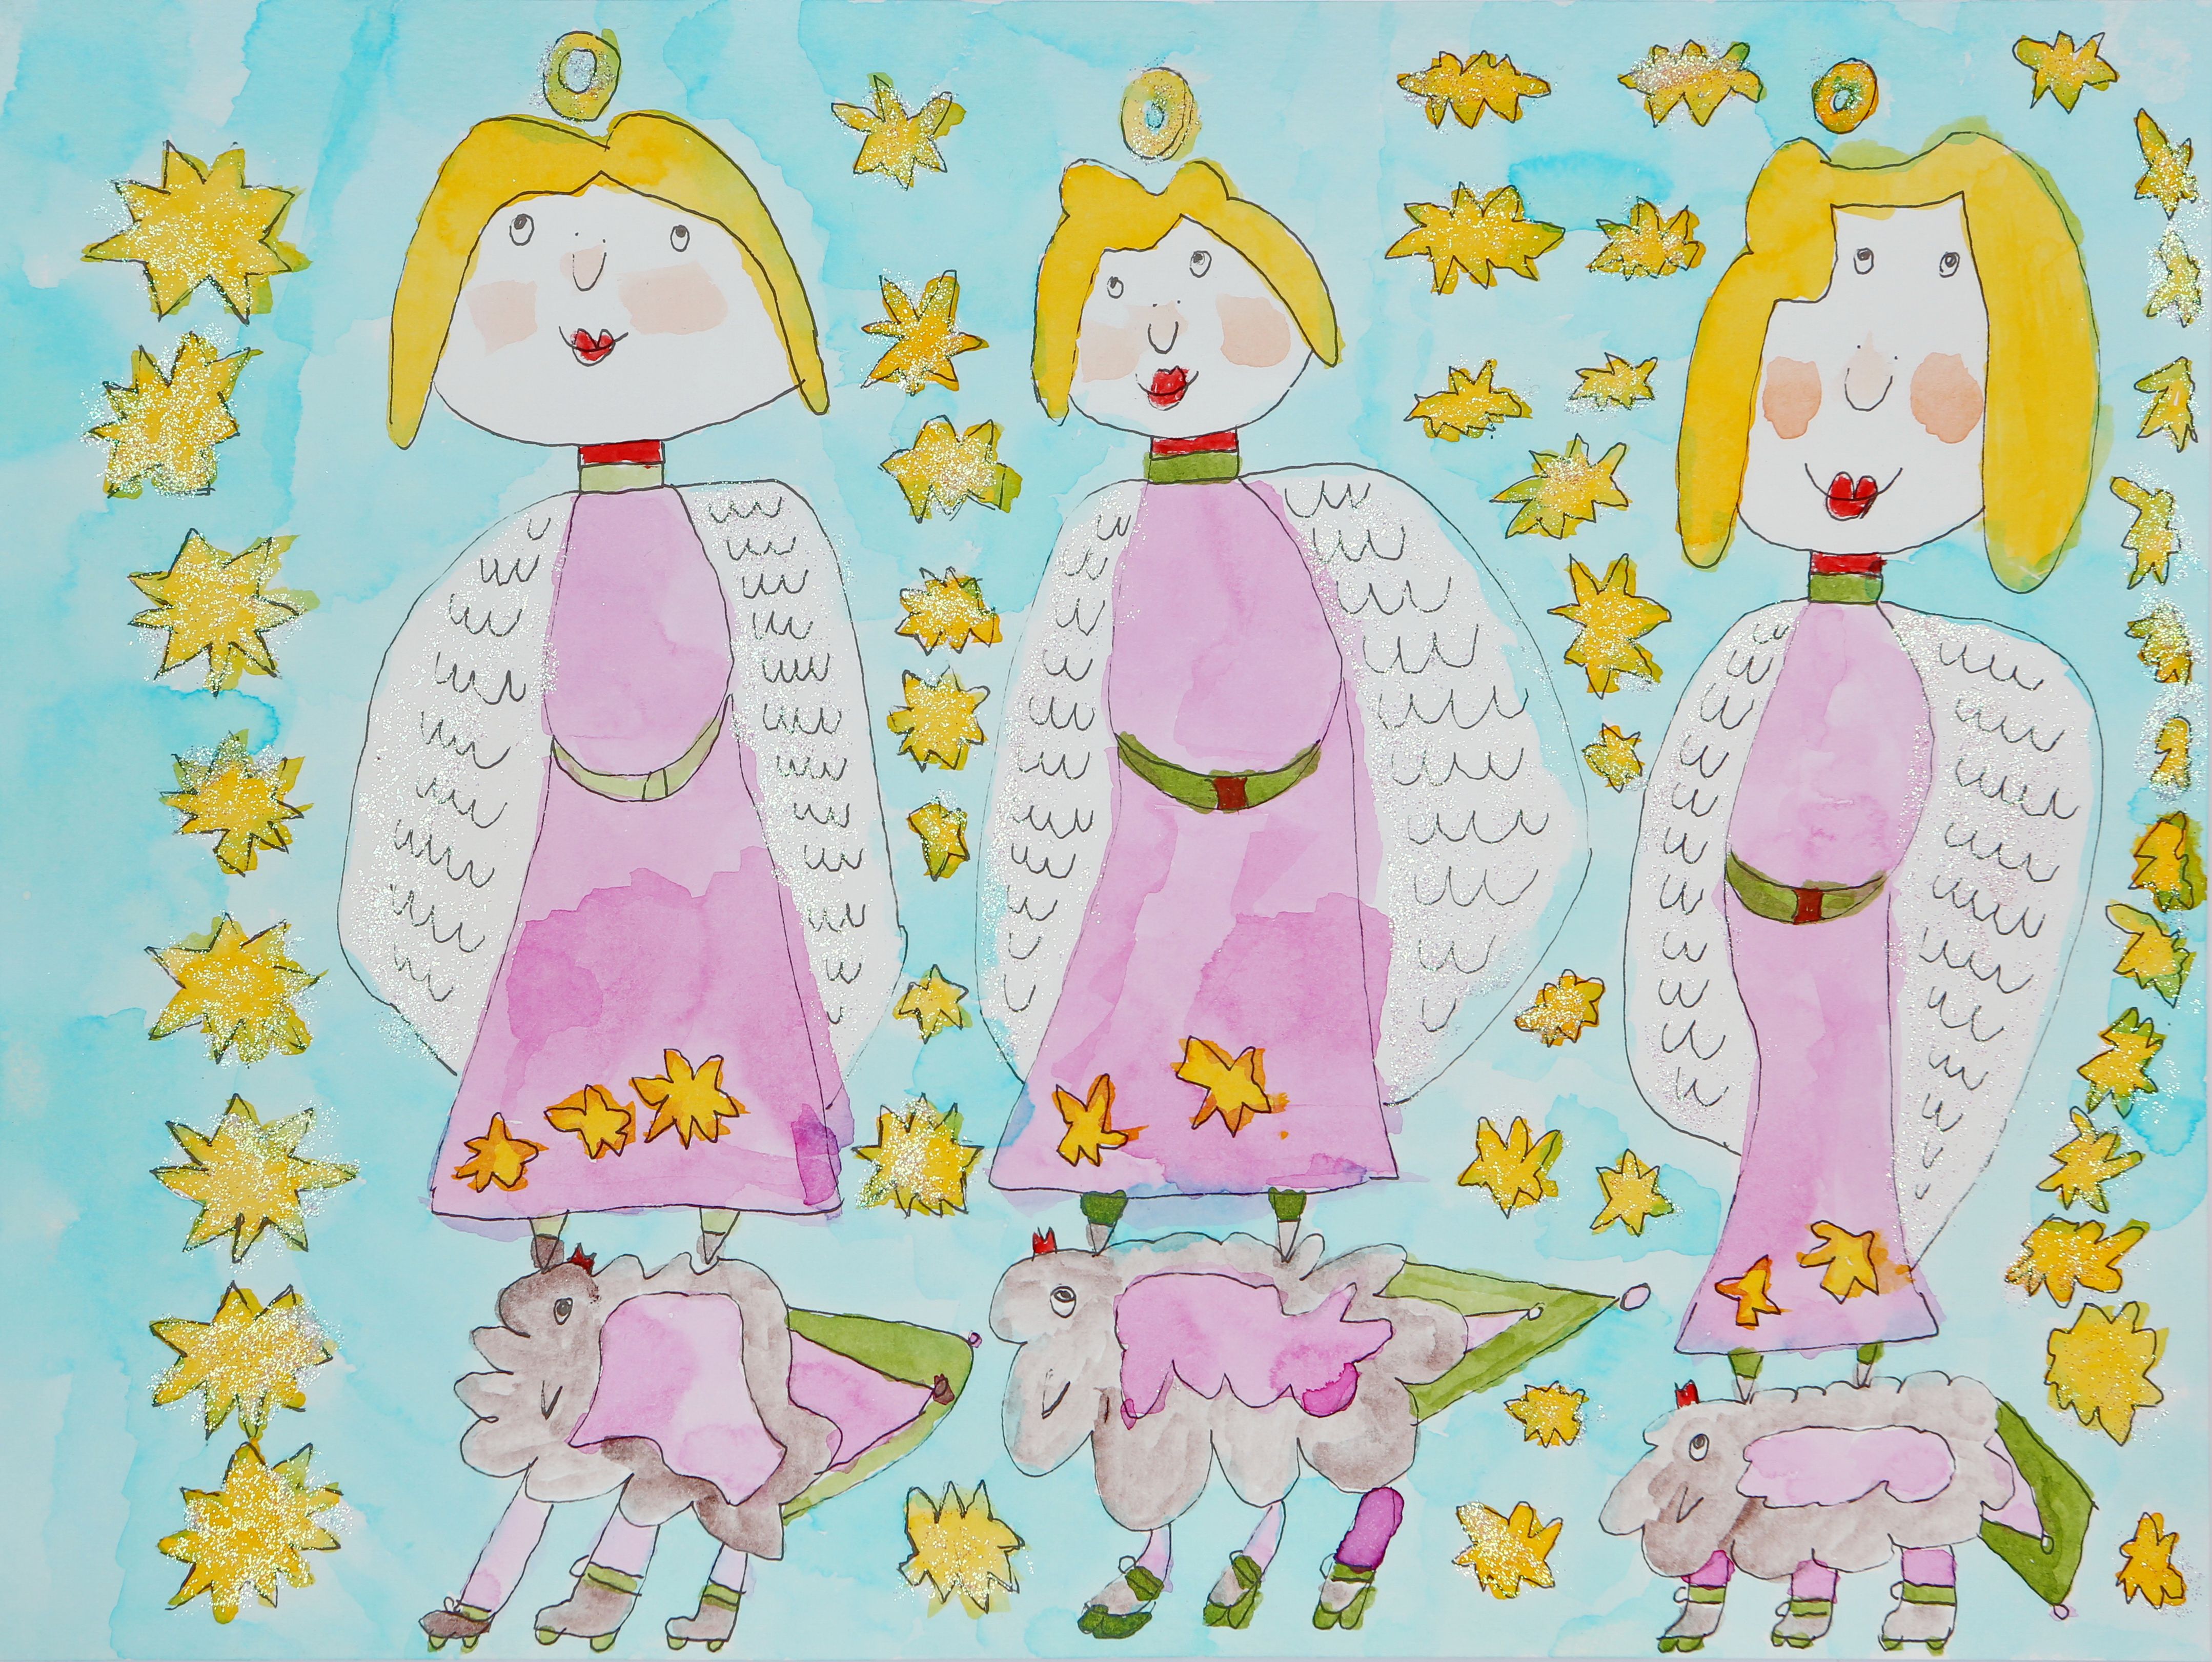 Die Tuschezeichnung zeigt drei Engel auf Schafen stehend und umgeben von Sternen.